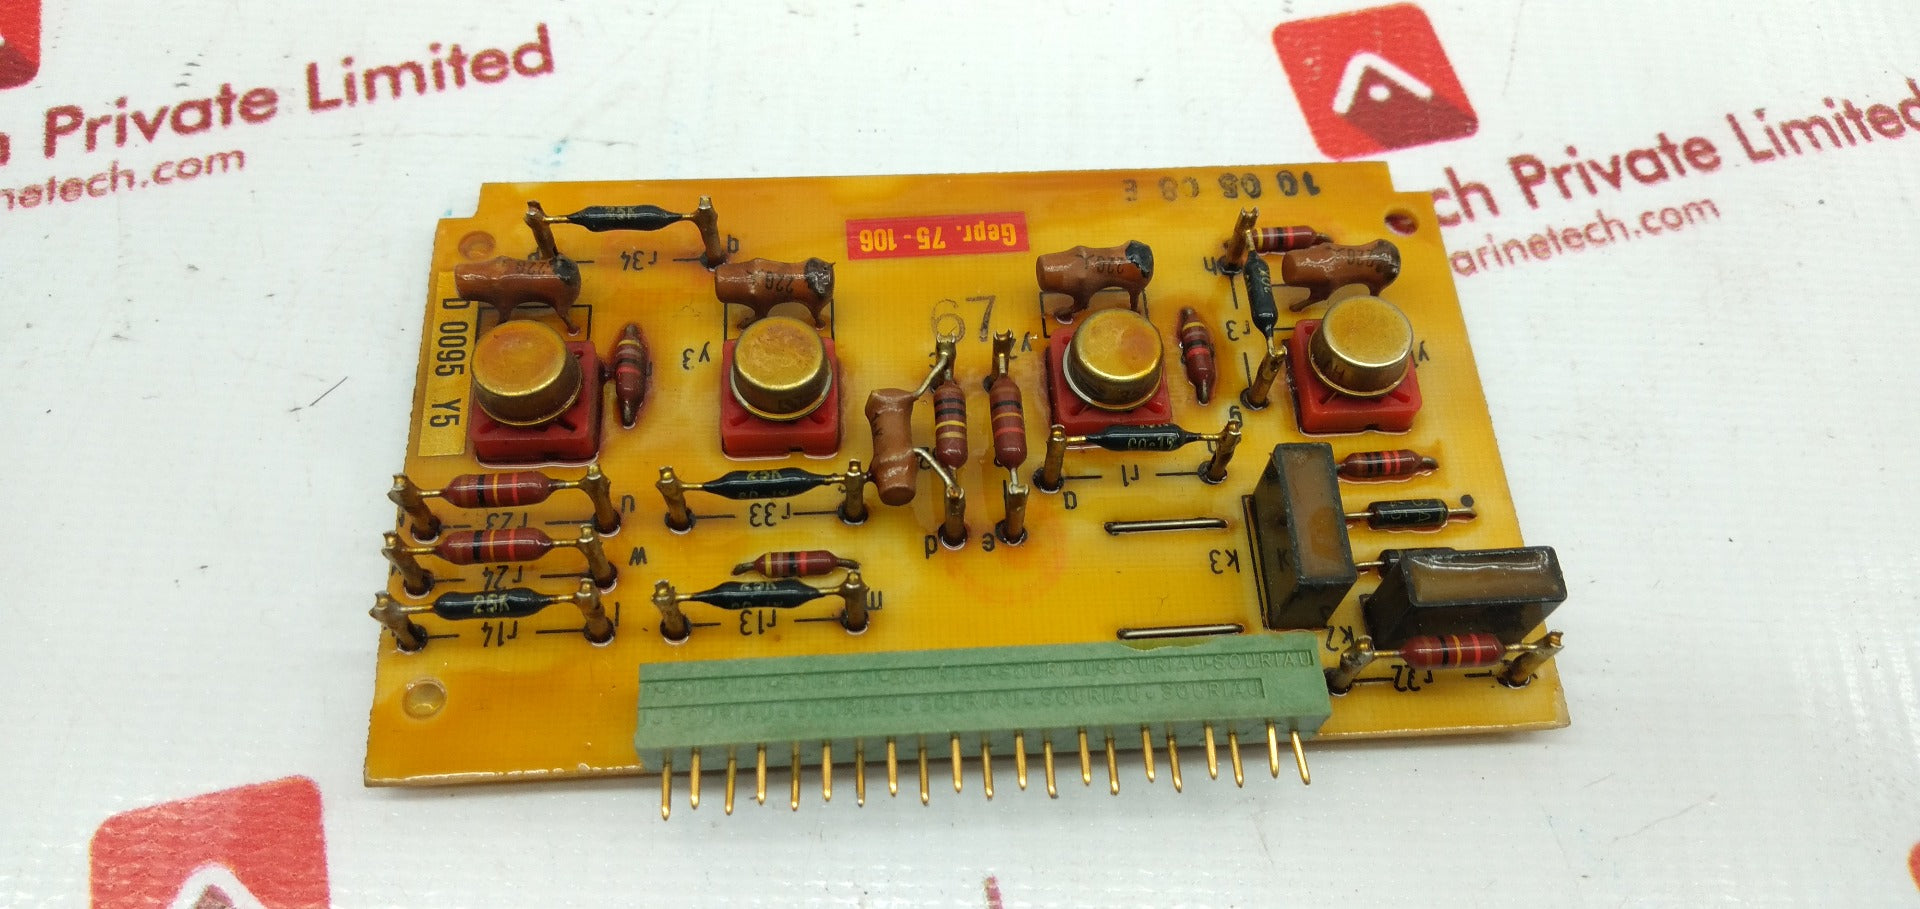 E53151-a1568-t4-a1 Pcb Card Printed Circuit Board D 0095 Y5